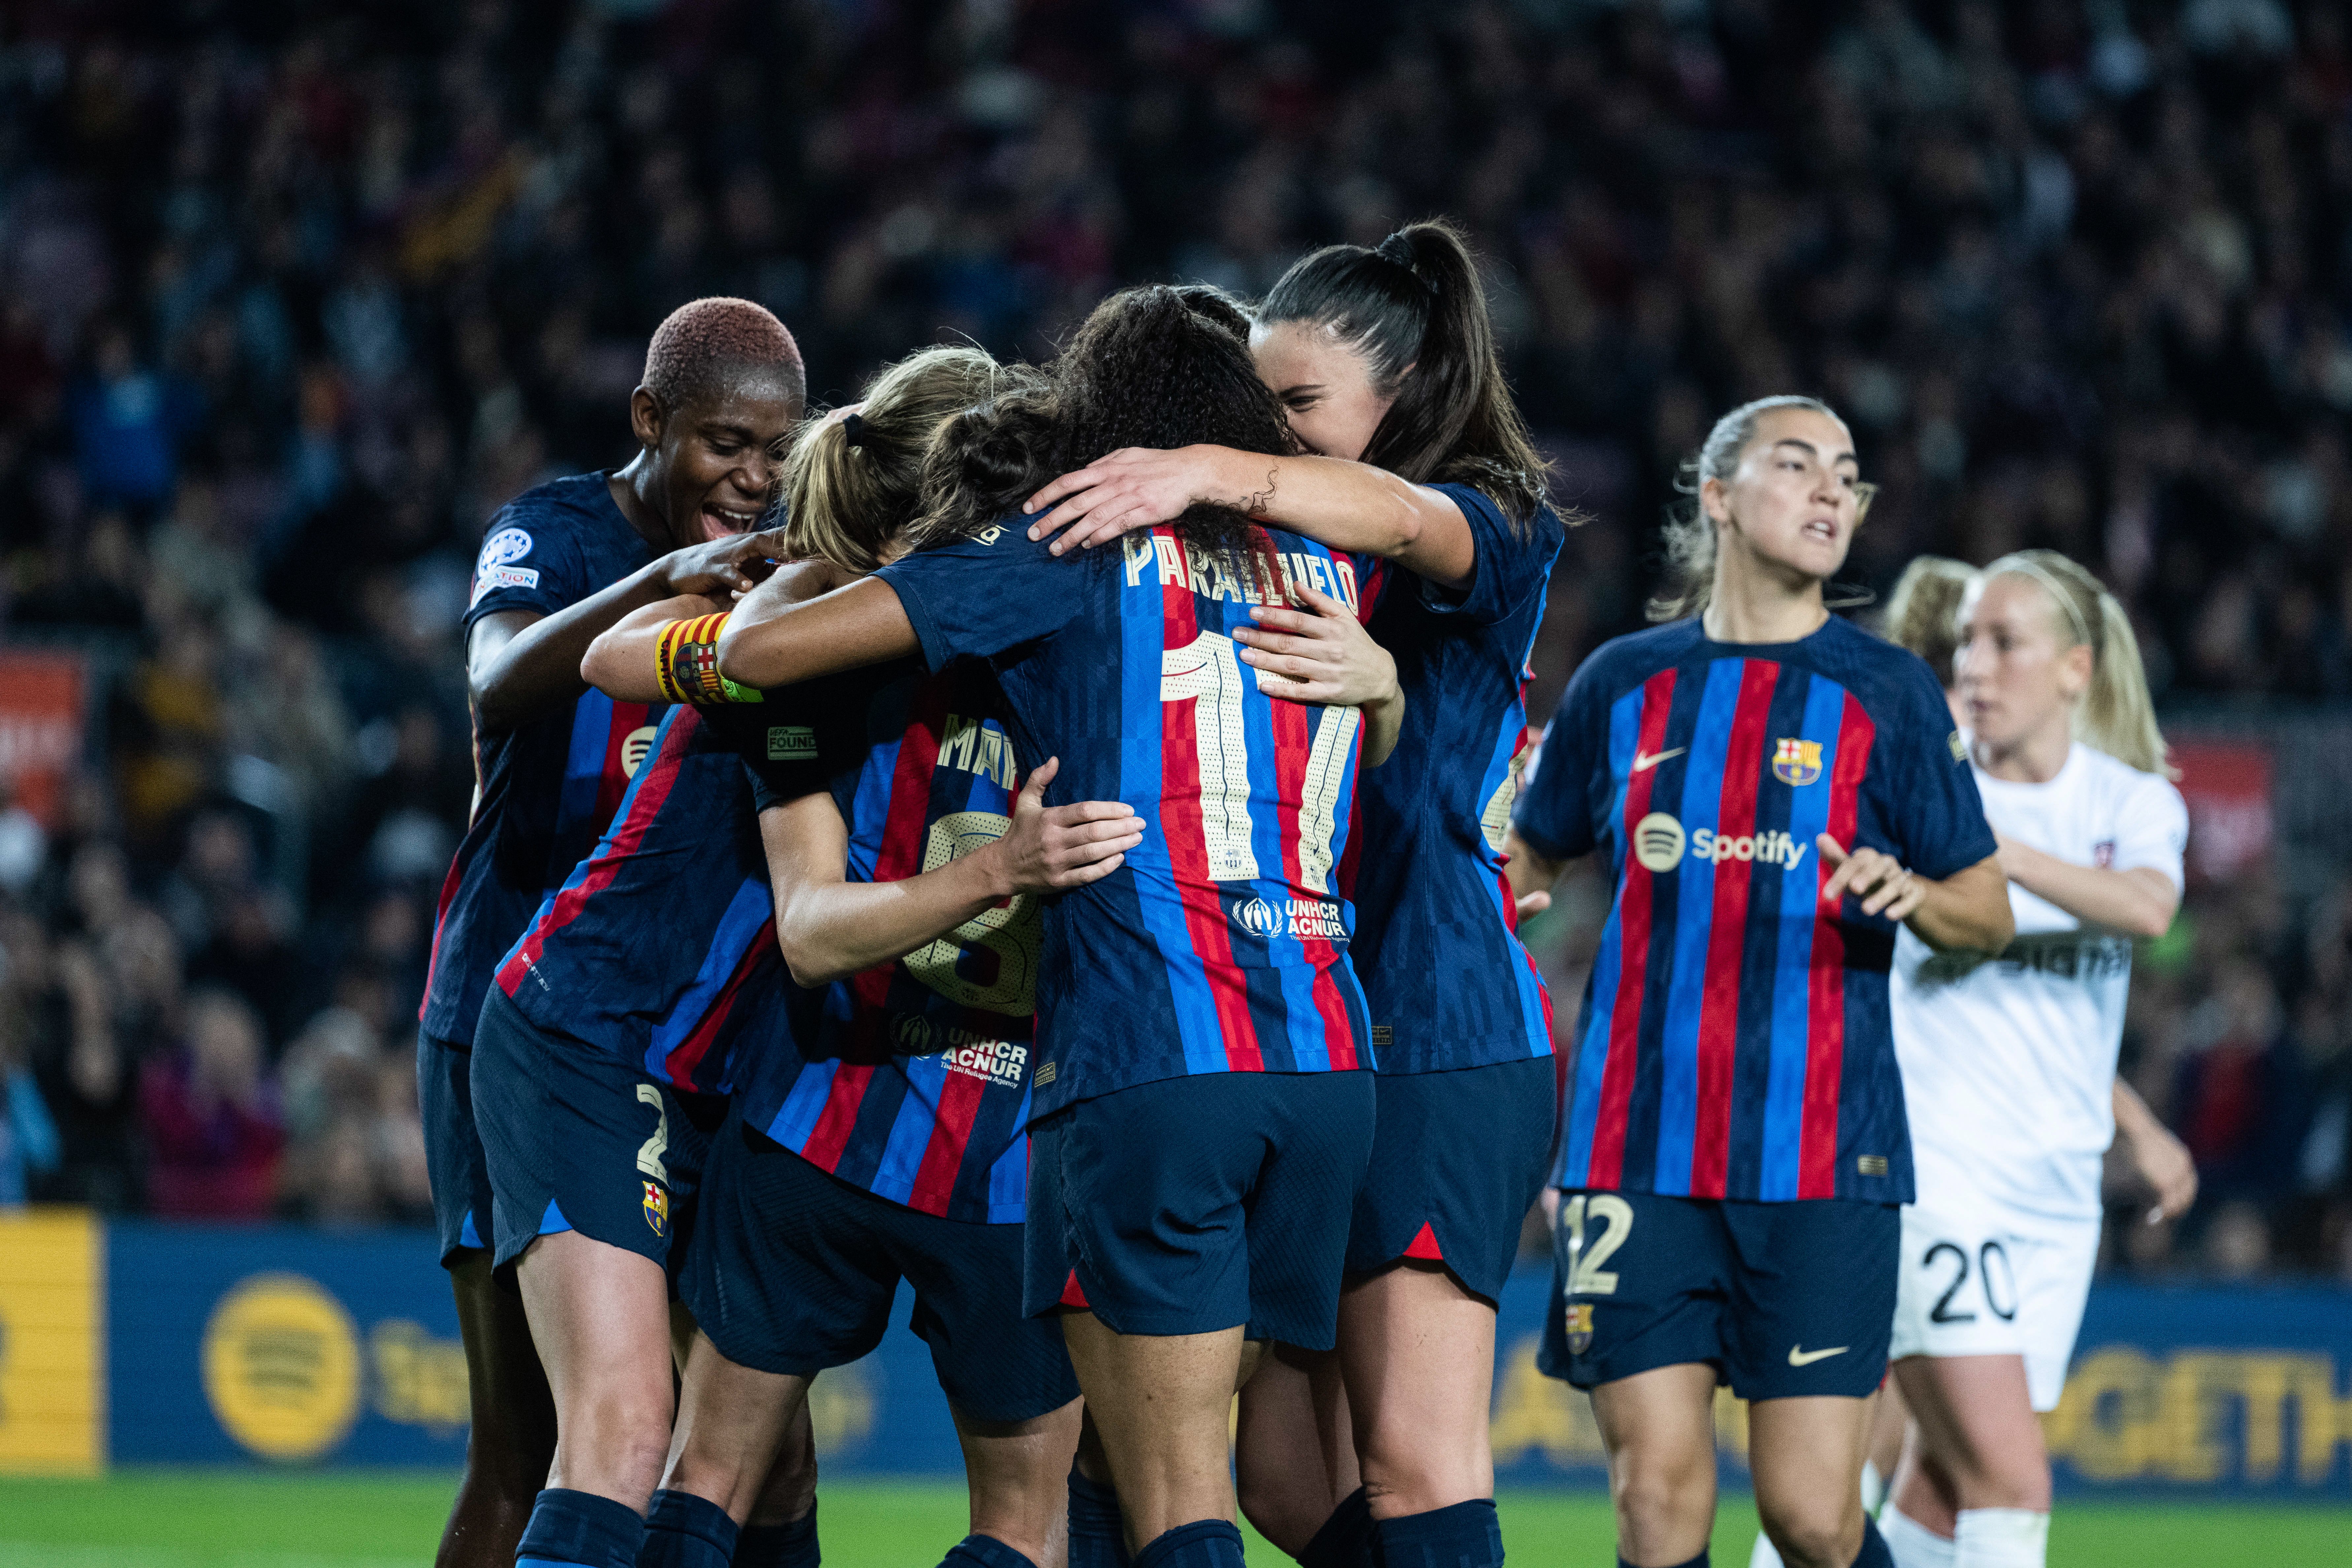 El Barça femení segueix batent rècords: ja és un equip autosuficient